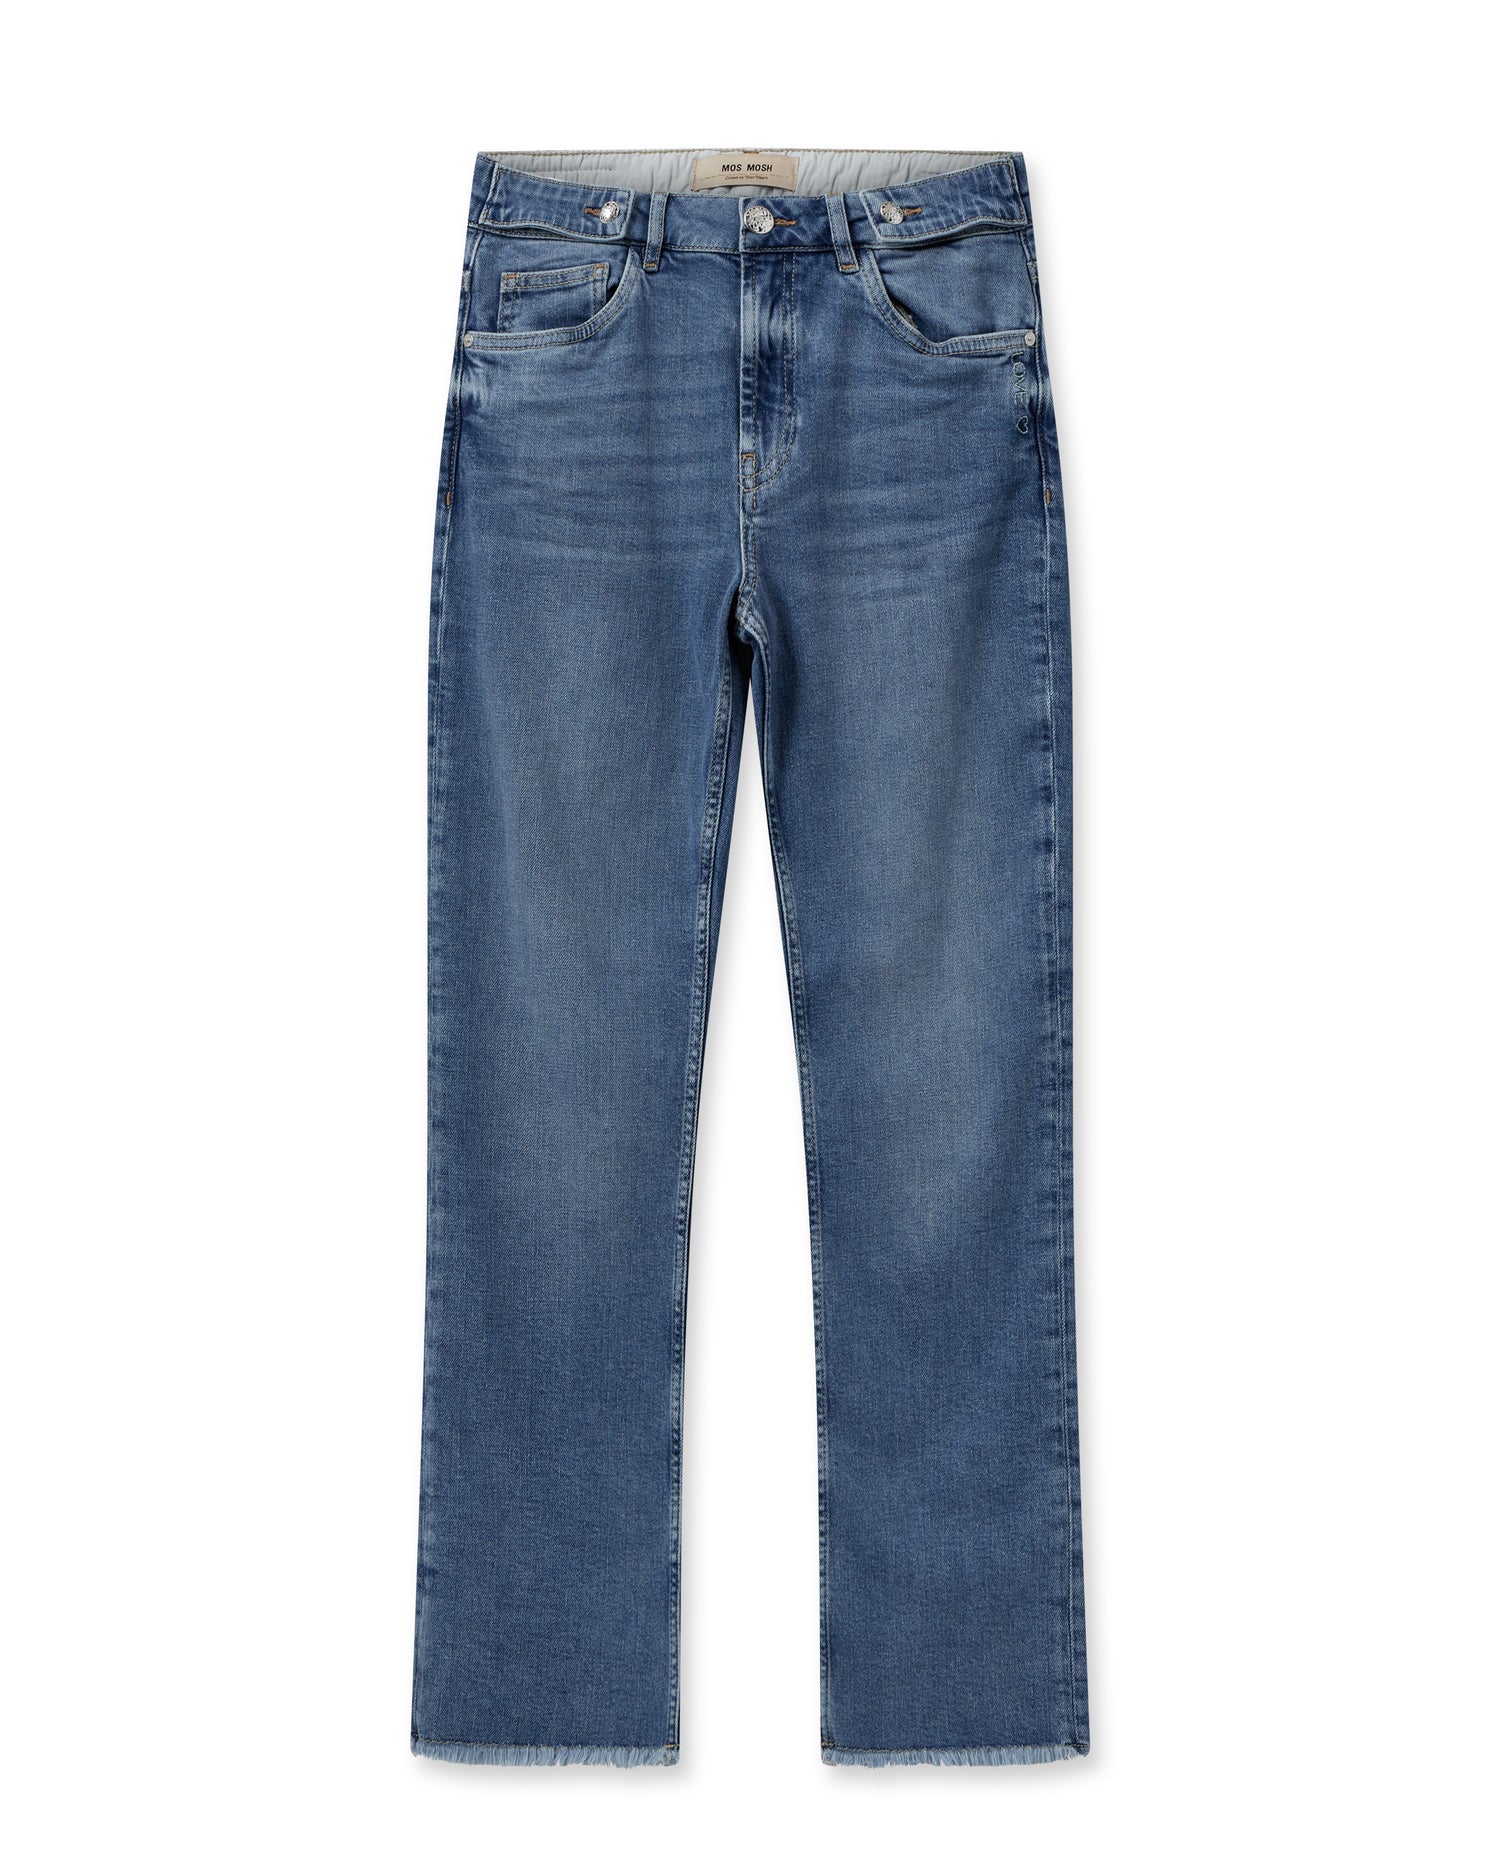 Jeans - ASHLEY MATEOS TWIST JEANS - Blue